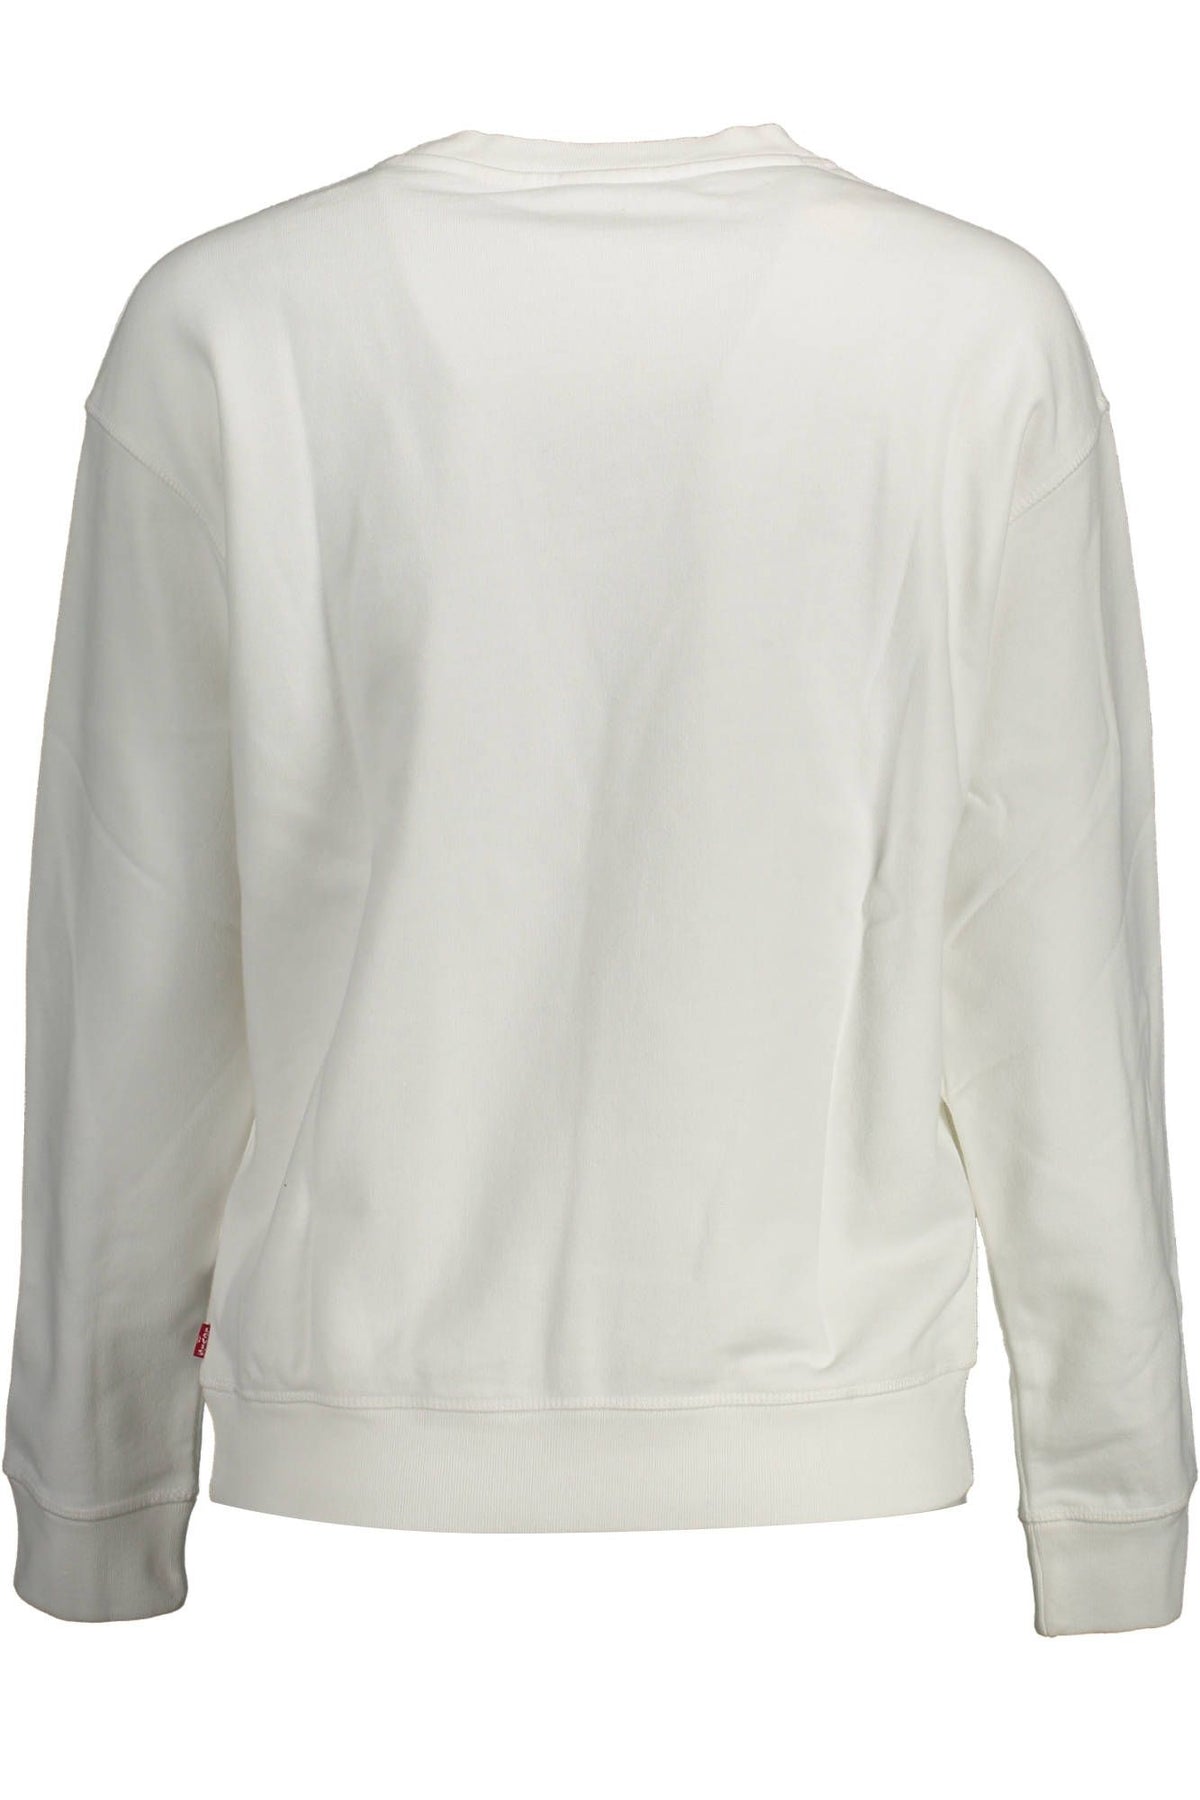 Levi's – Schickes weißes Baumwoll-Sweatshirt mit Logo